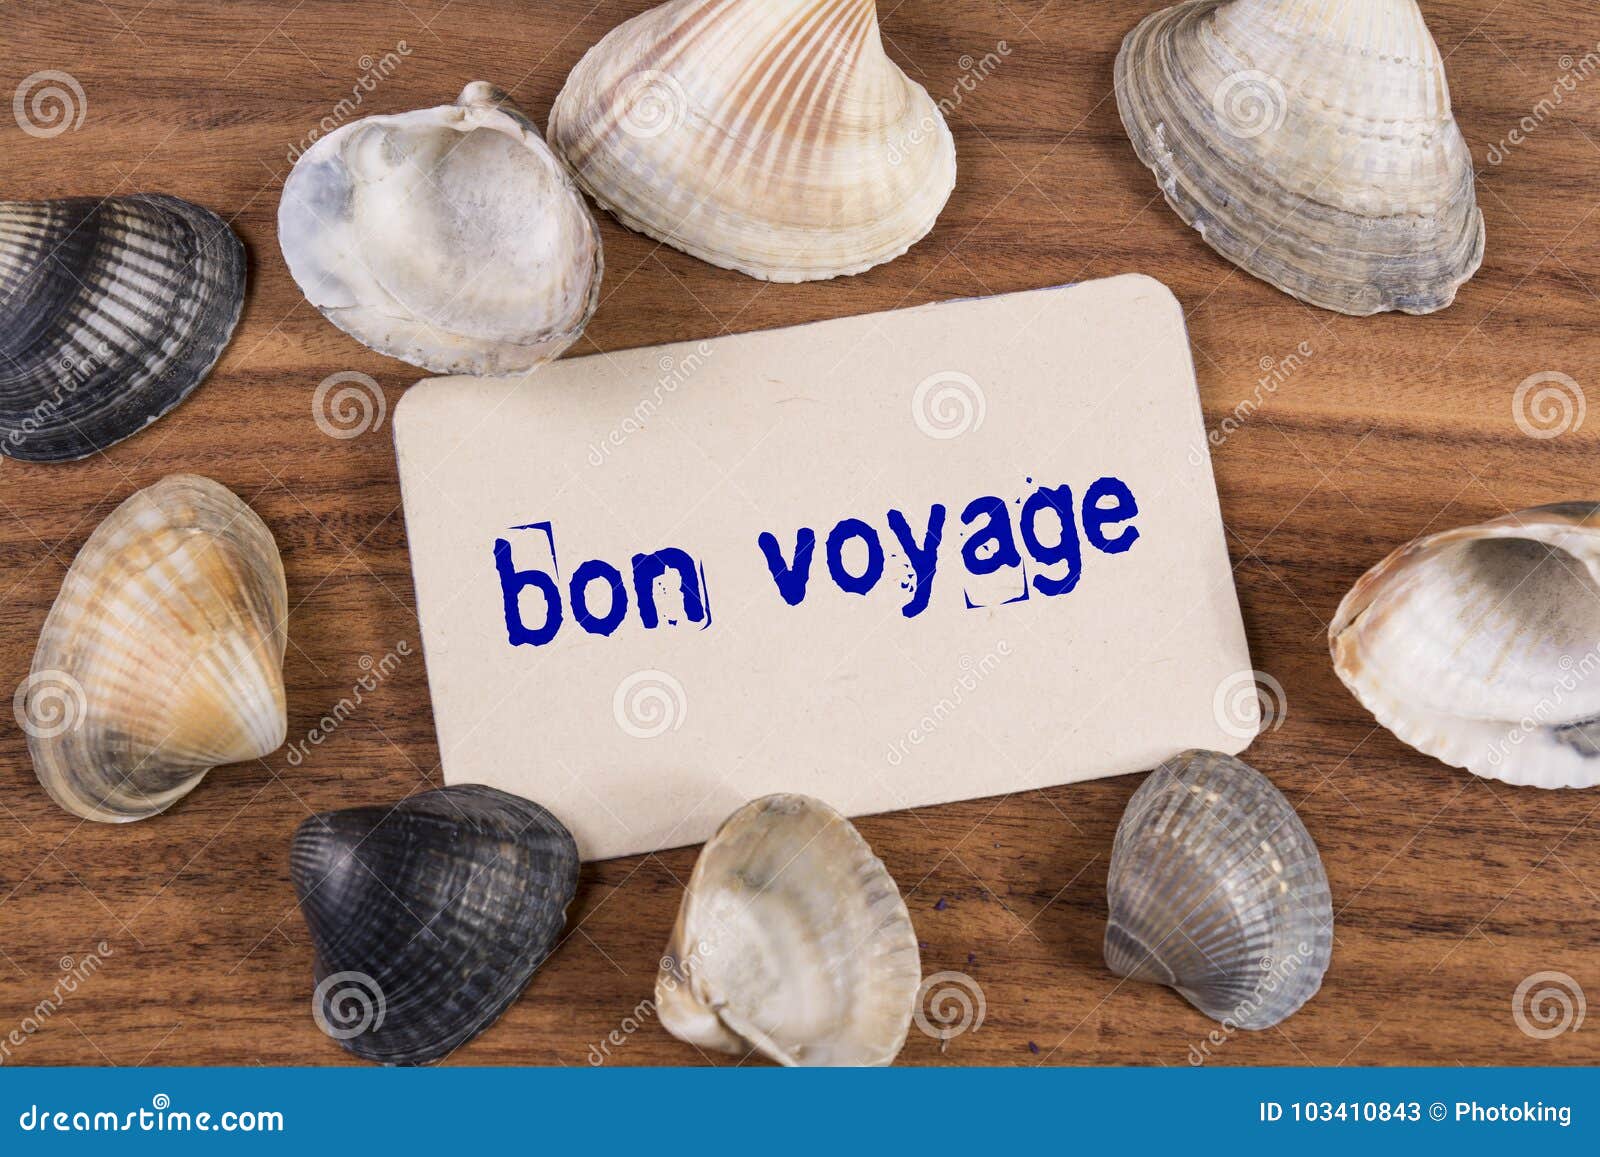 bon voyage word